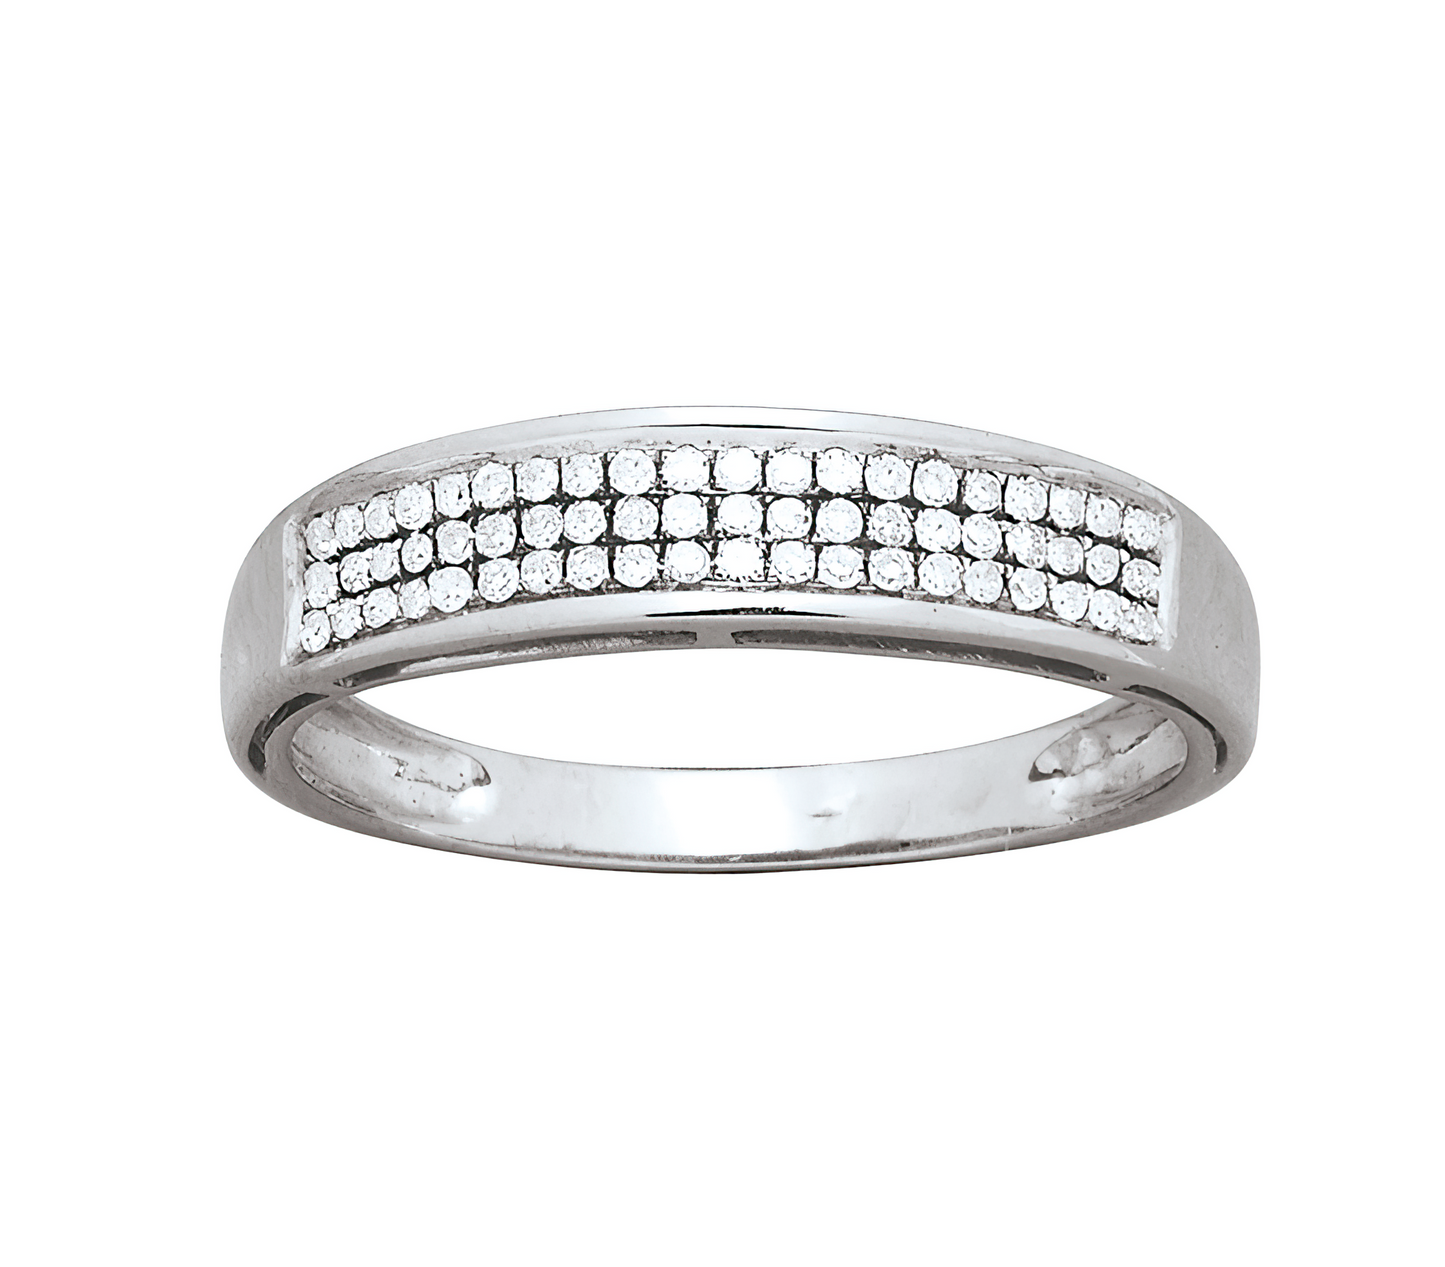 3 row diamond wedding ring